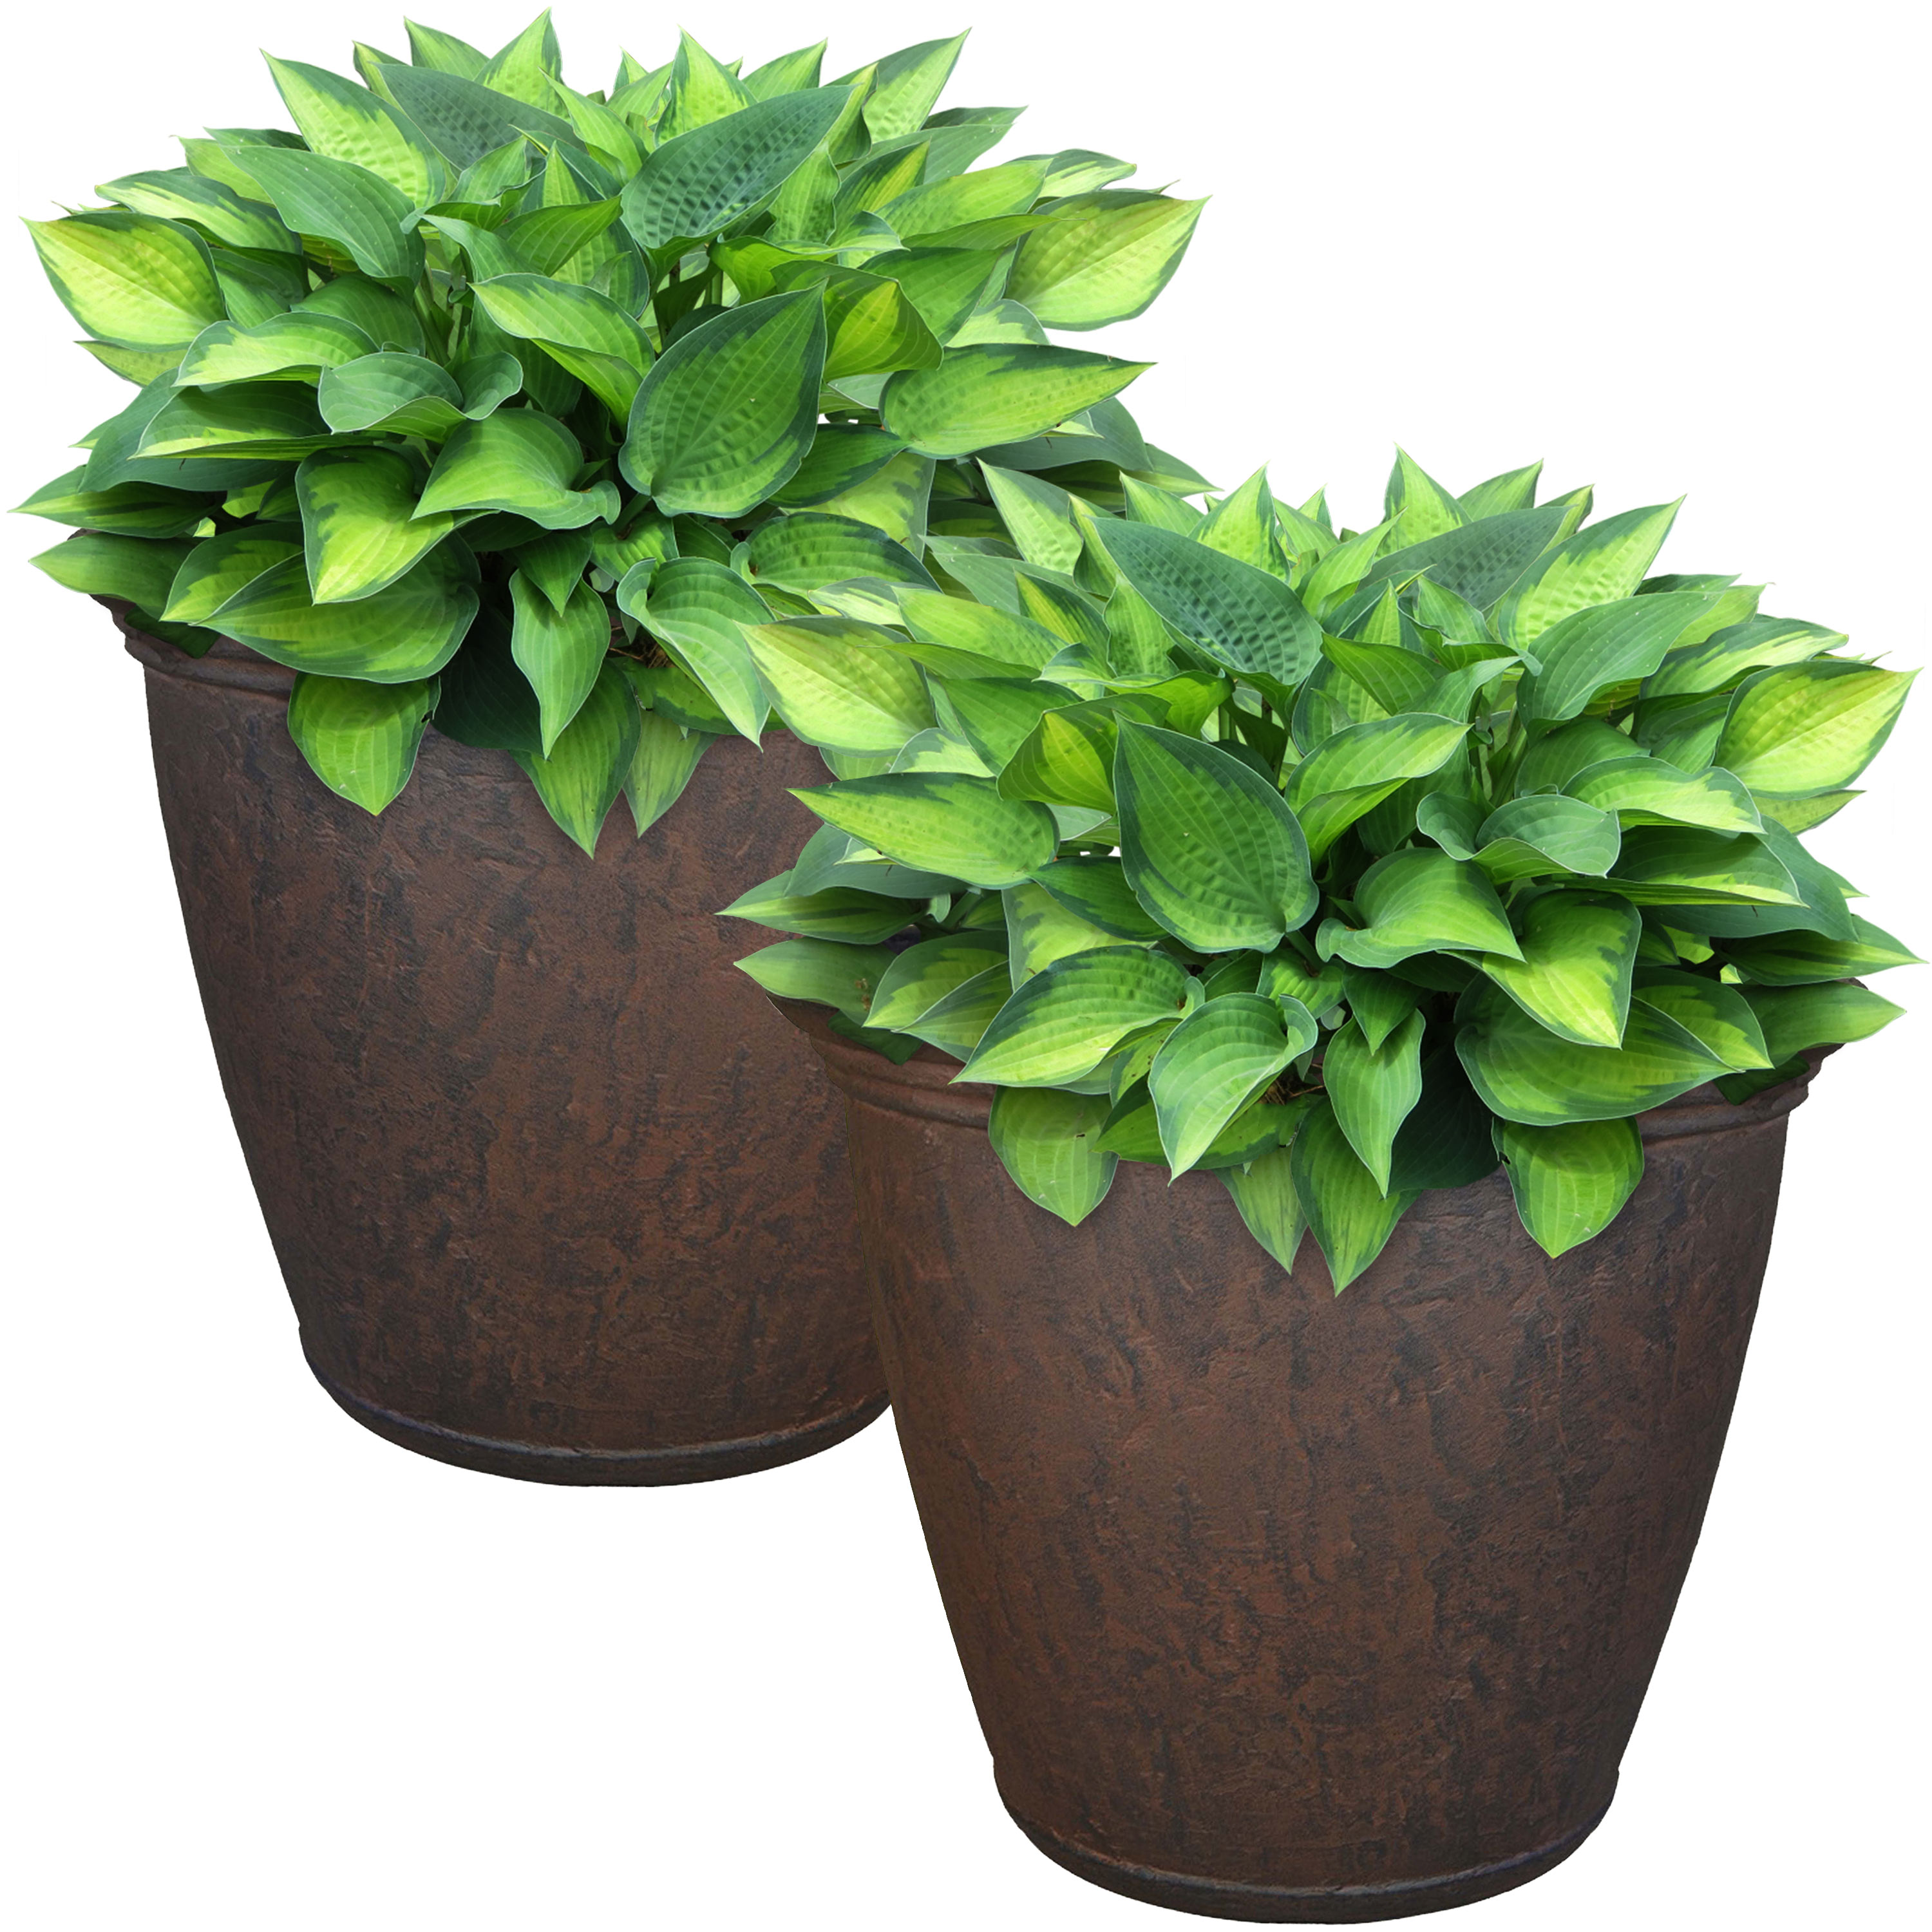 Sunnydaze Anjelica Outdoor Flower Pot Planter - Rust - 16-Inch - 2-Pack